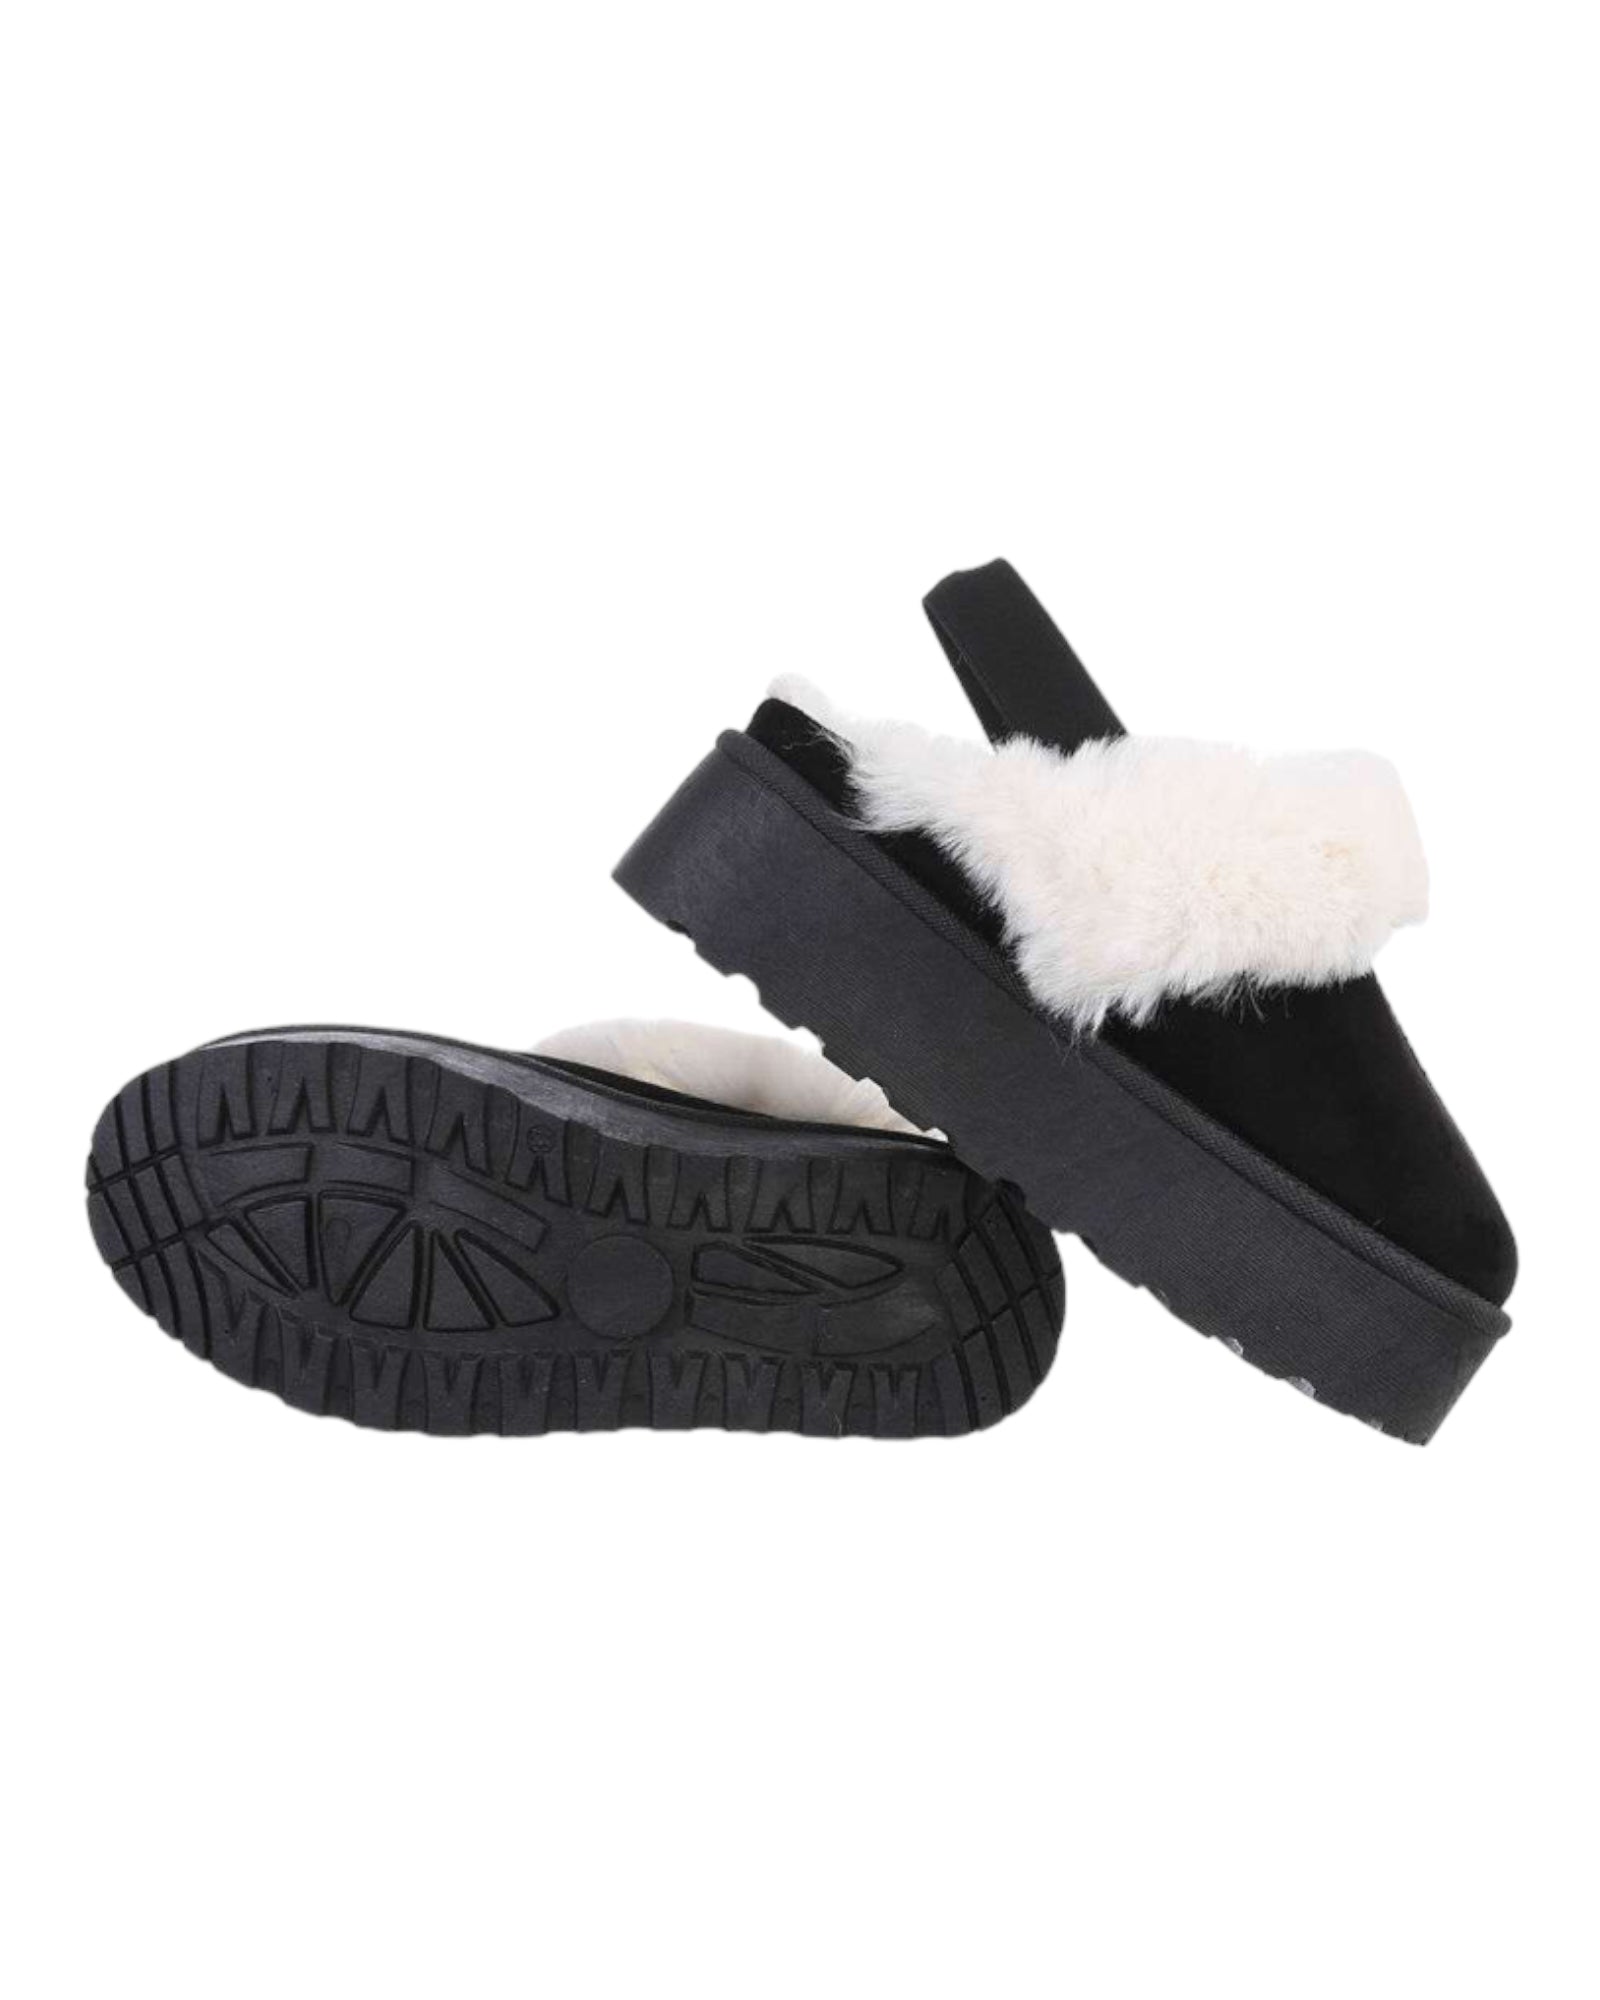 Chaussures Noir avec fausses fourrures Blanche et à semelles compensée - NuptiaLove